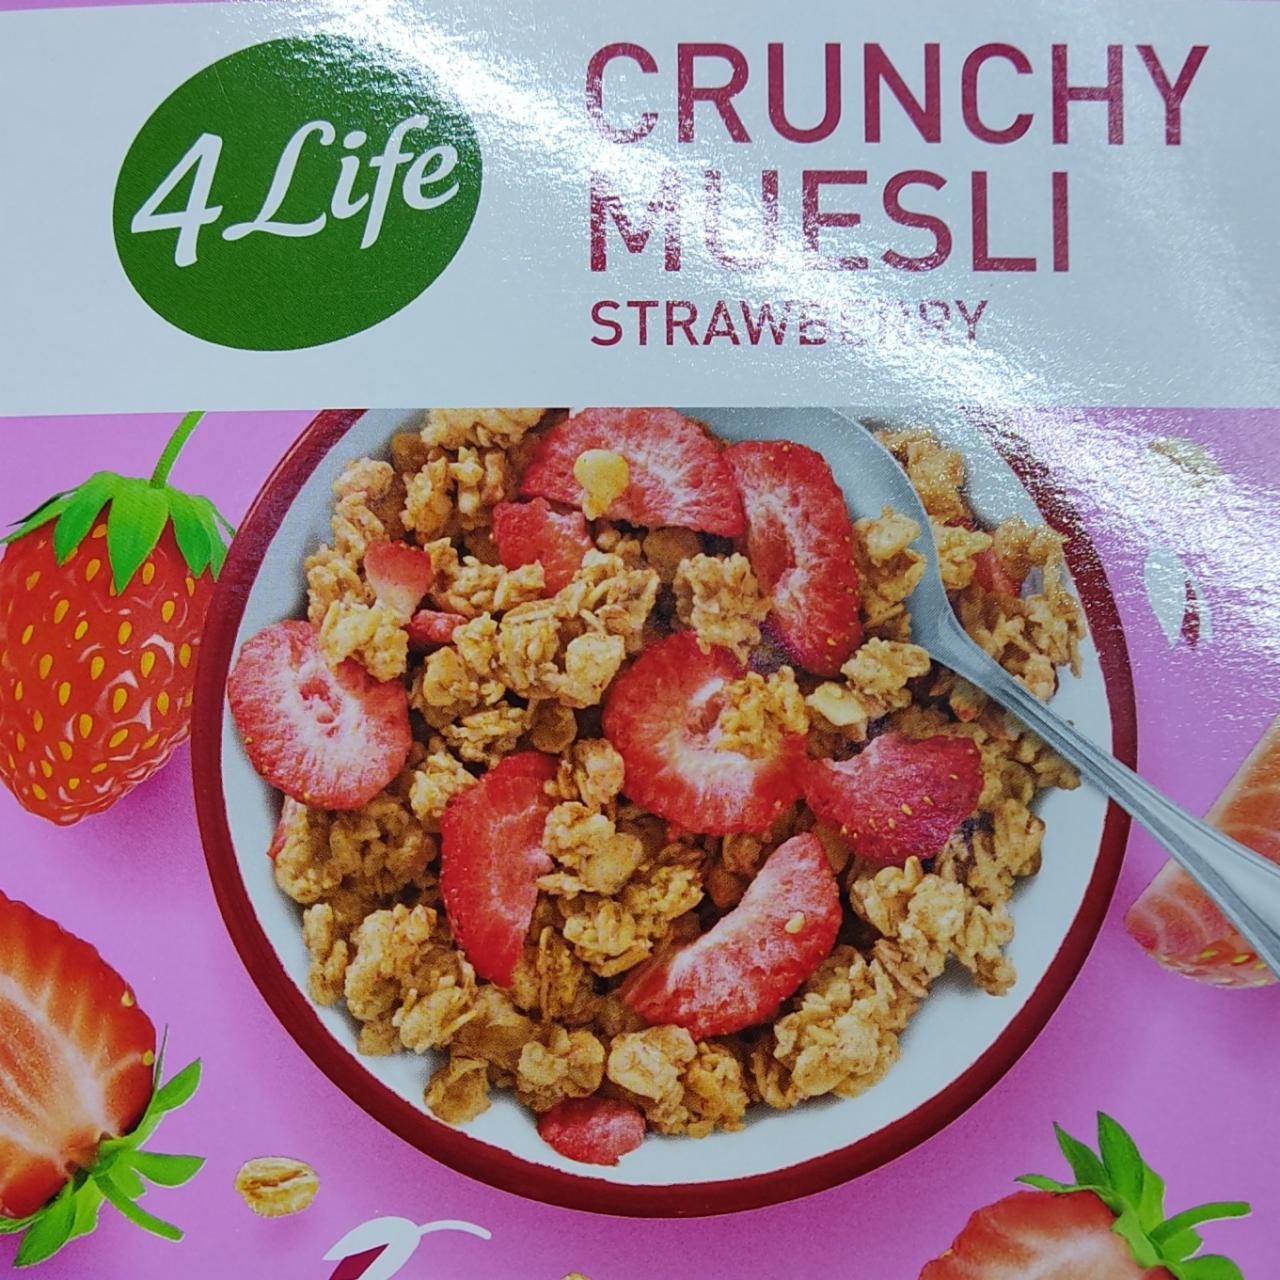 Фото - Мюсли овсяные со вкусом клубники Crunchy Muesli Strawberry 4Life